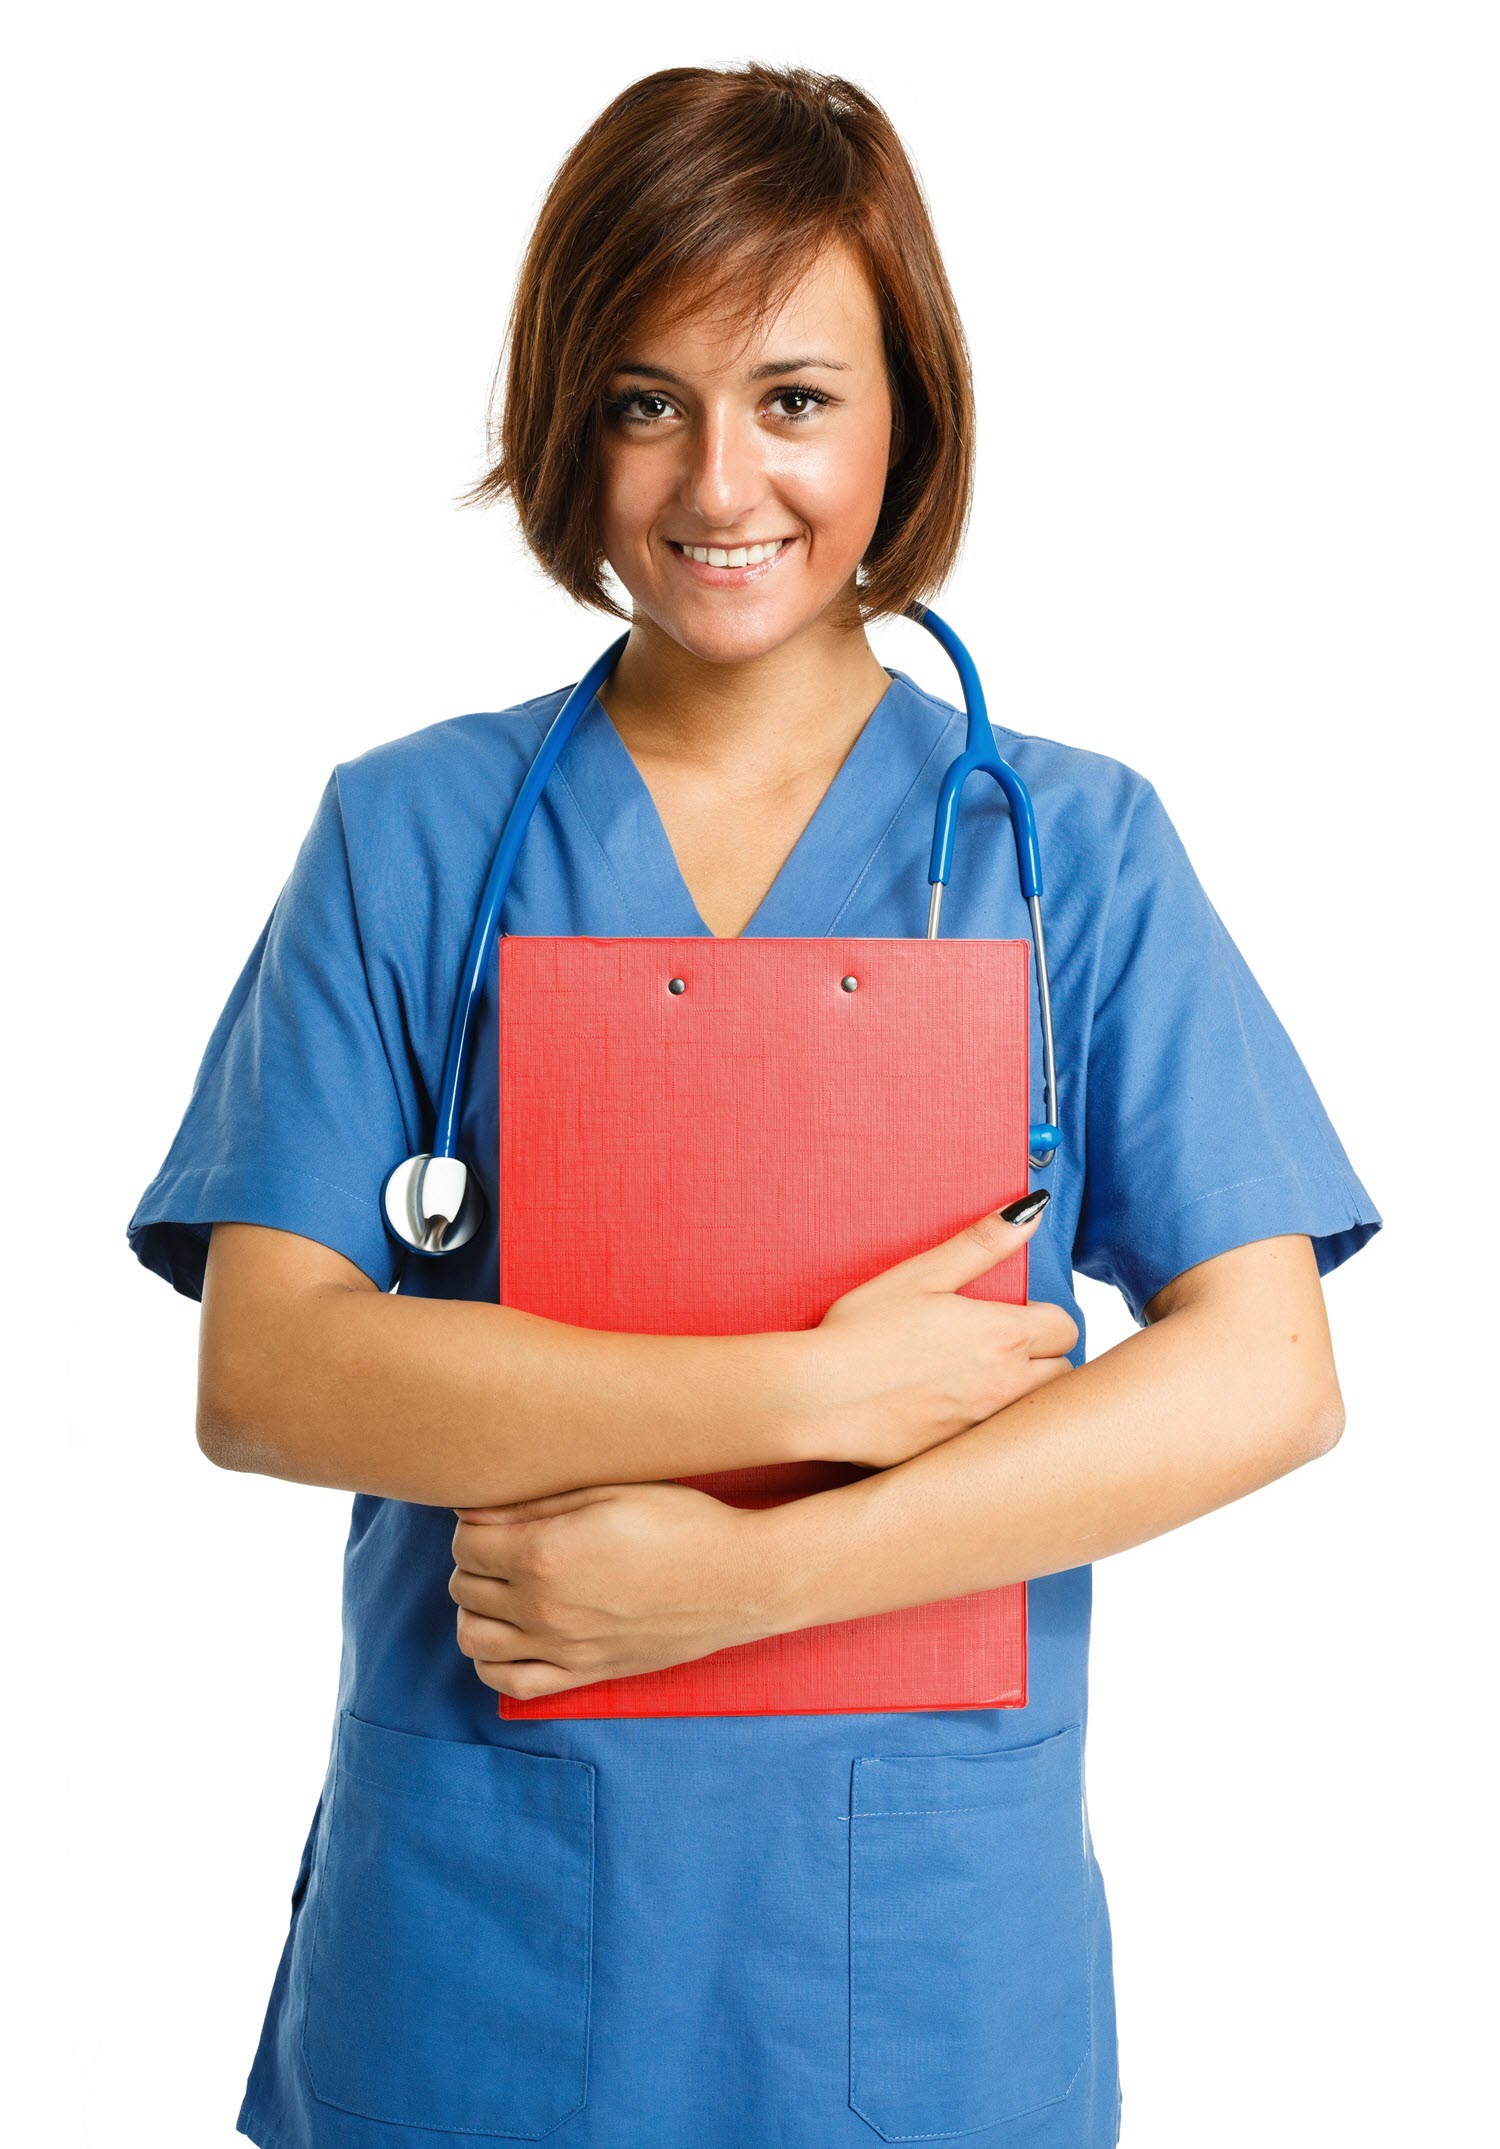 What is a Case Management Nurse?